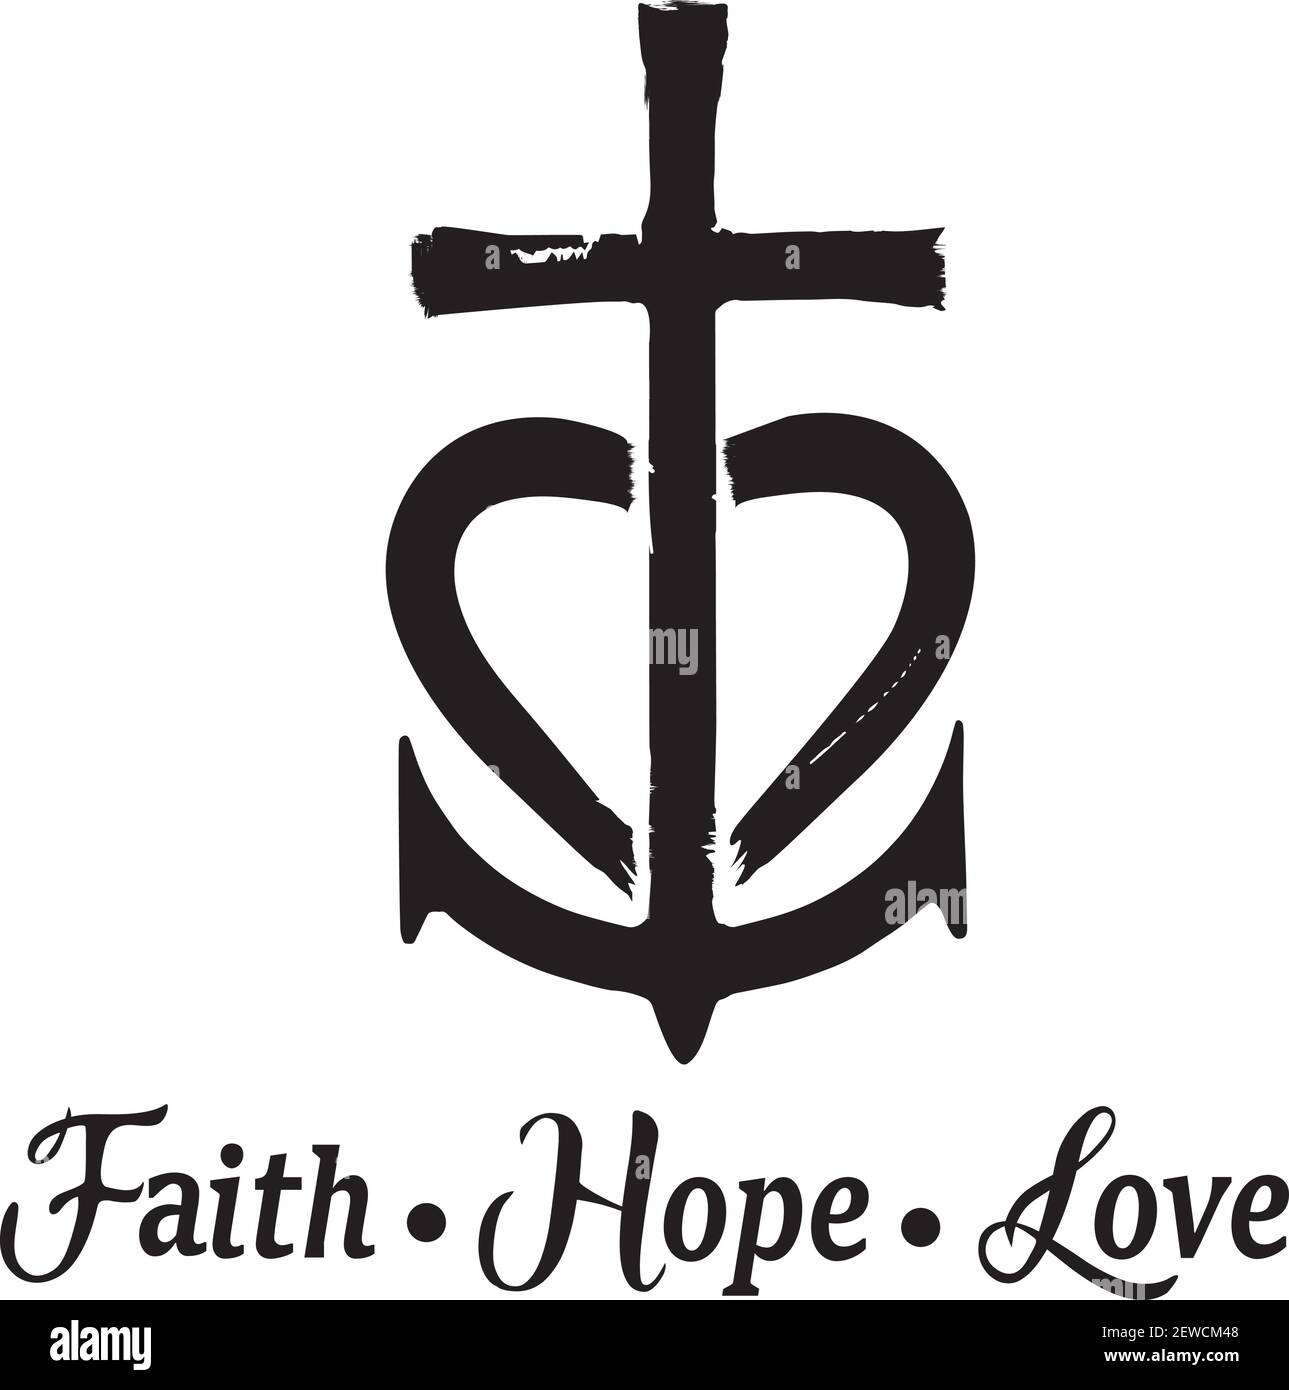 My new tattoo  faith cross hope anchor and love hear  Flickr